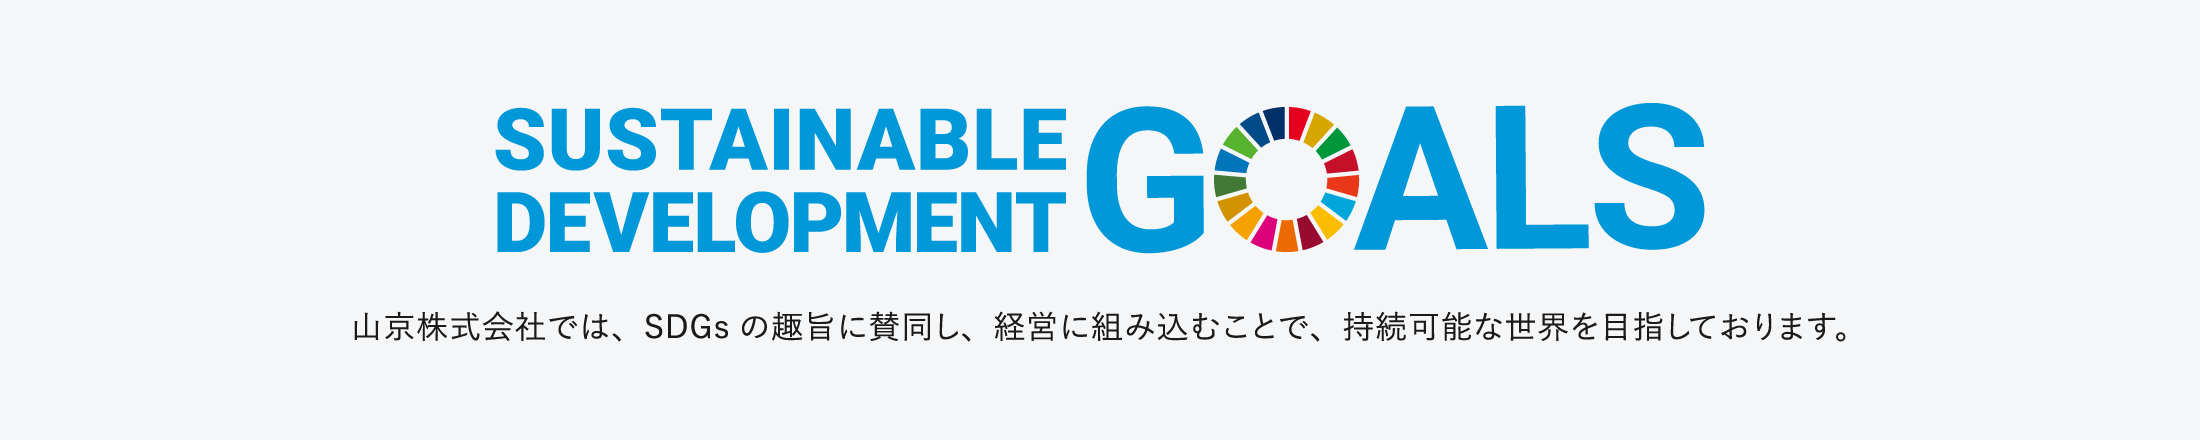 SDGs 山京株式会社での取り組み